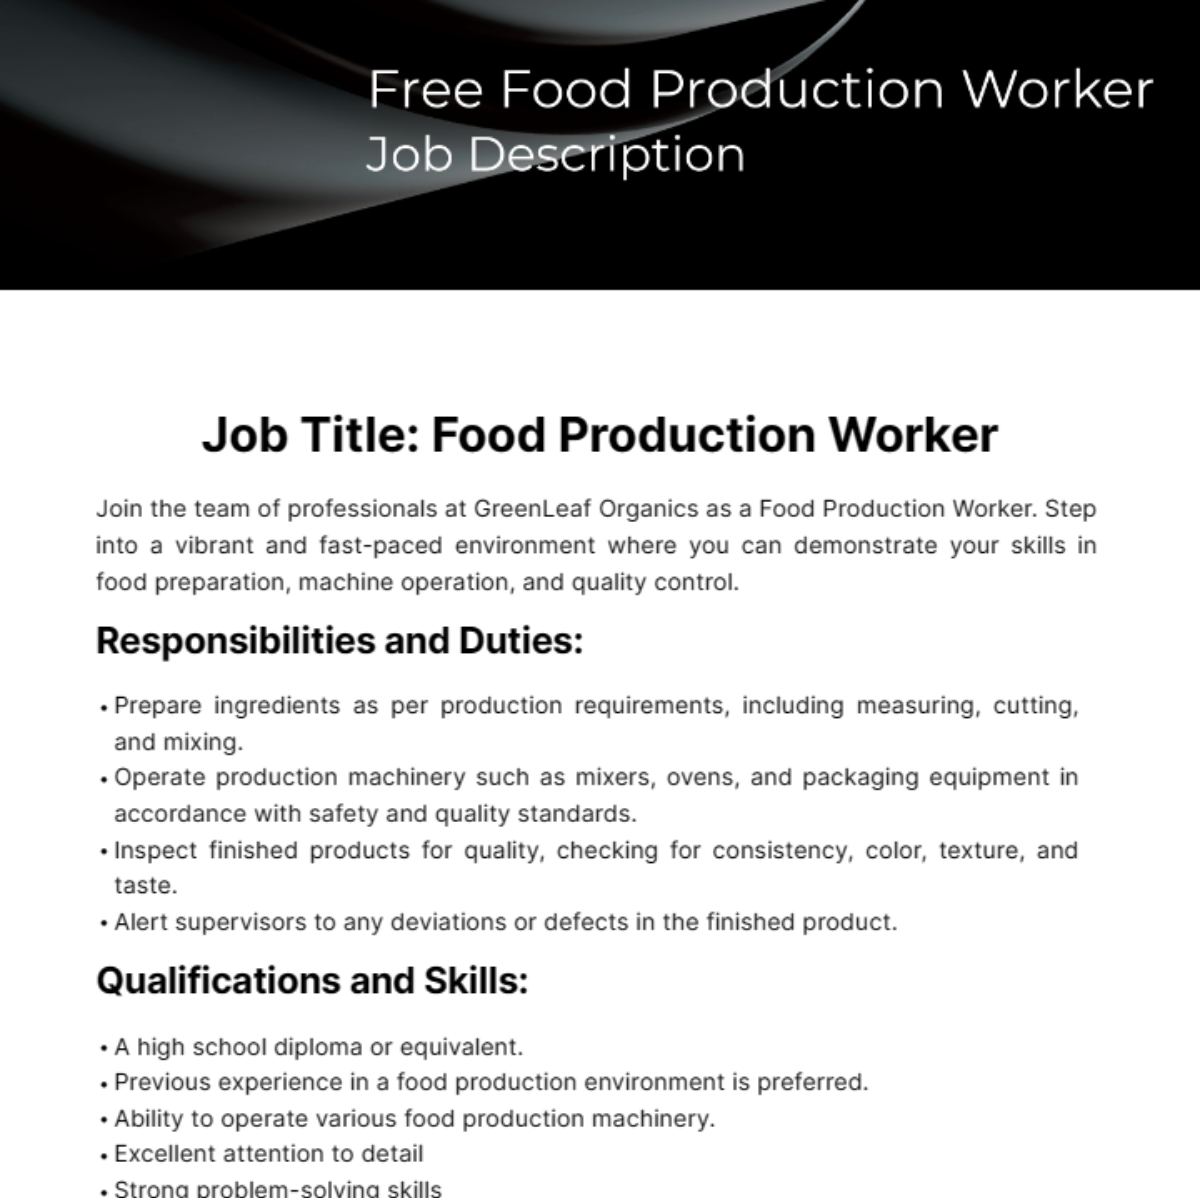 Food Production Worker Job Description Template